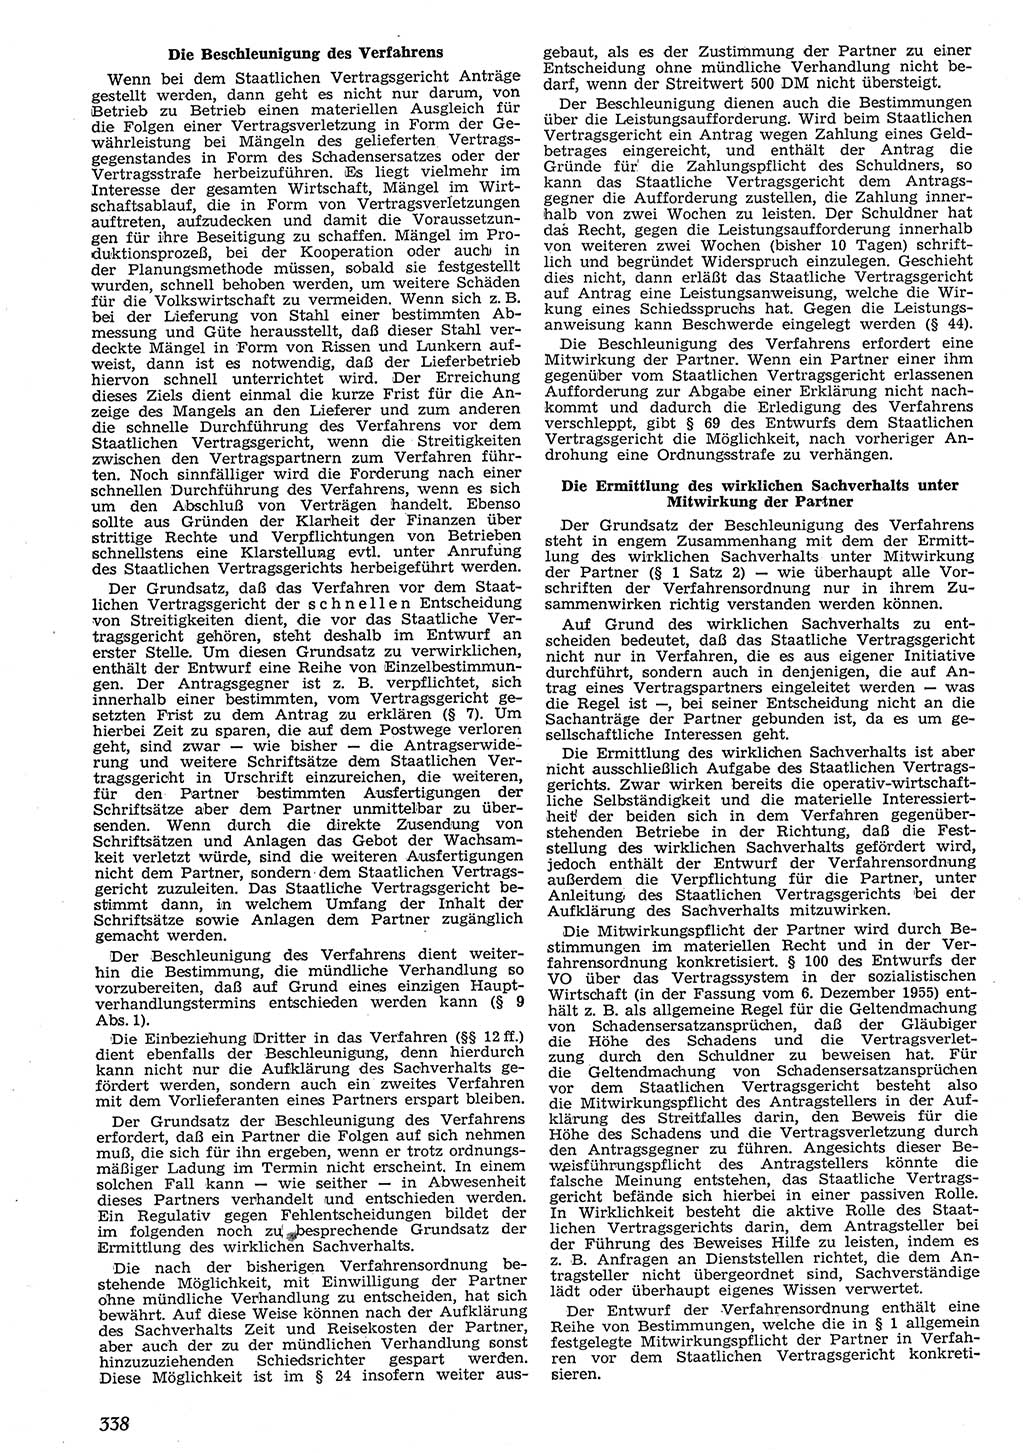 Neue Justiz (NJ), Zeitschrift für Recht und Rechtswissenschaft [Deutsche Demokratische Republik (DDR)], 10. Jahrgang 1956, Seite 338 (NJ DDR 1956, S. 338)